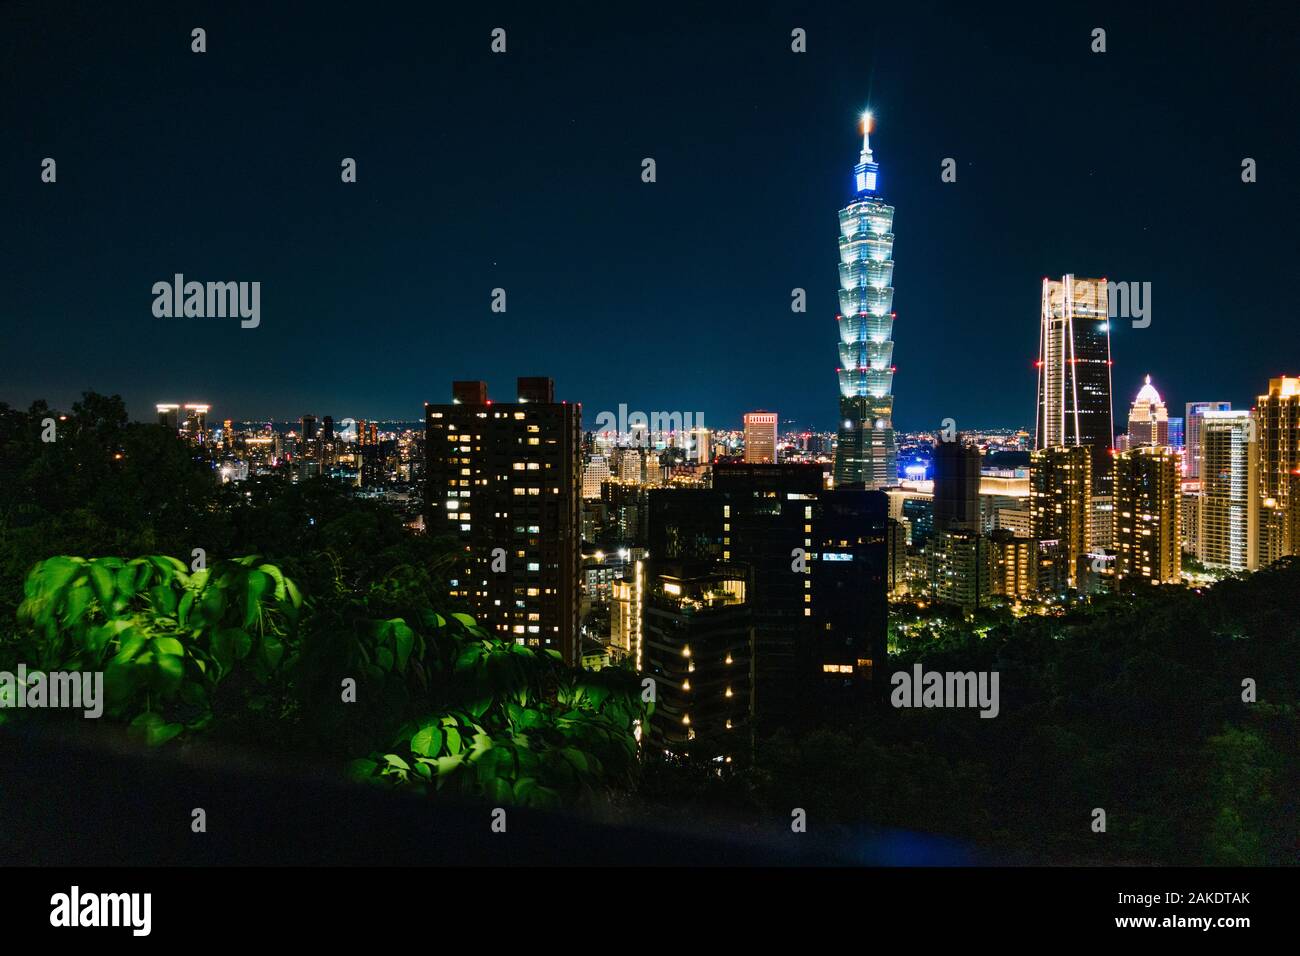 Le gratte-ciel Taipei 101 et les gratte-ciel de la ville illuminés la nuit, comme vu de Elephant Hill, Taipei, Taiwan Banque D'Images